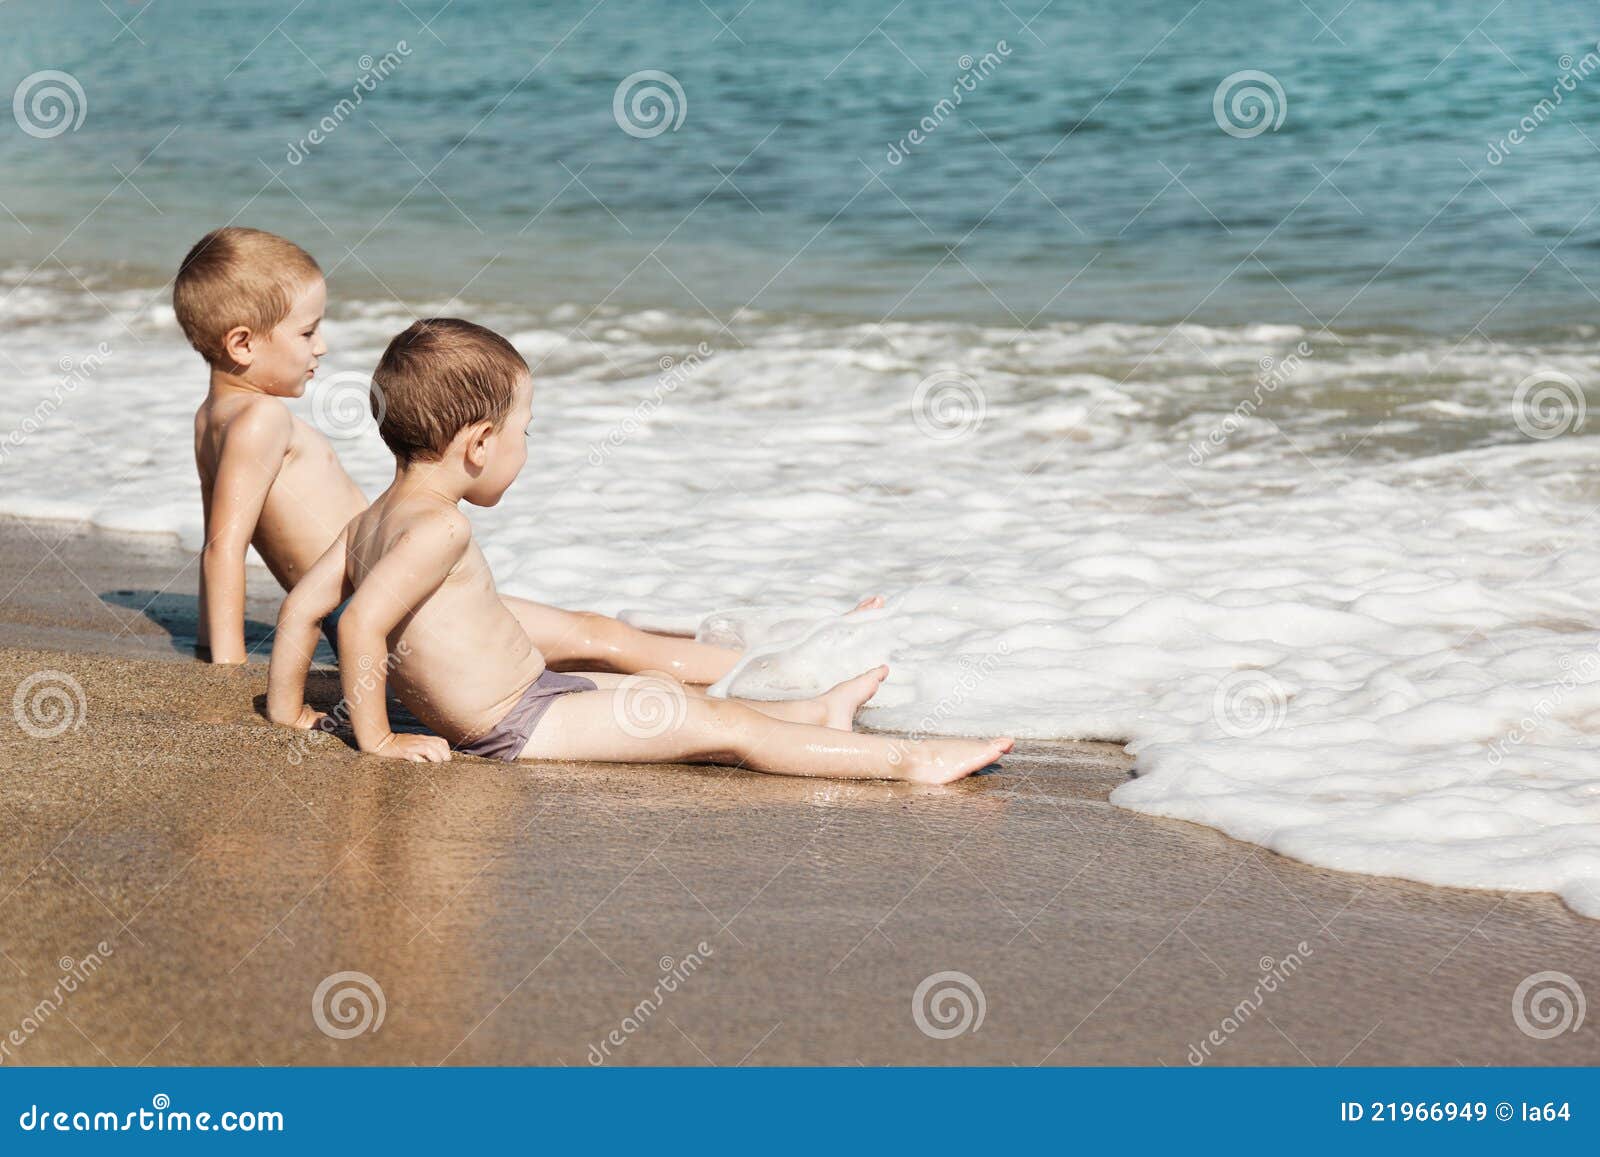 порно маленькие мальчики пляж фото 1